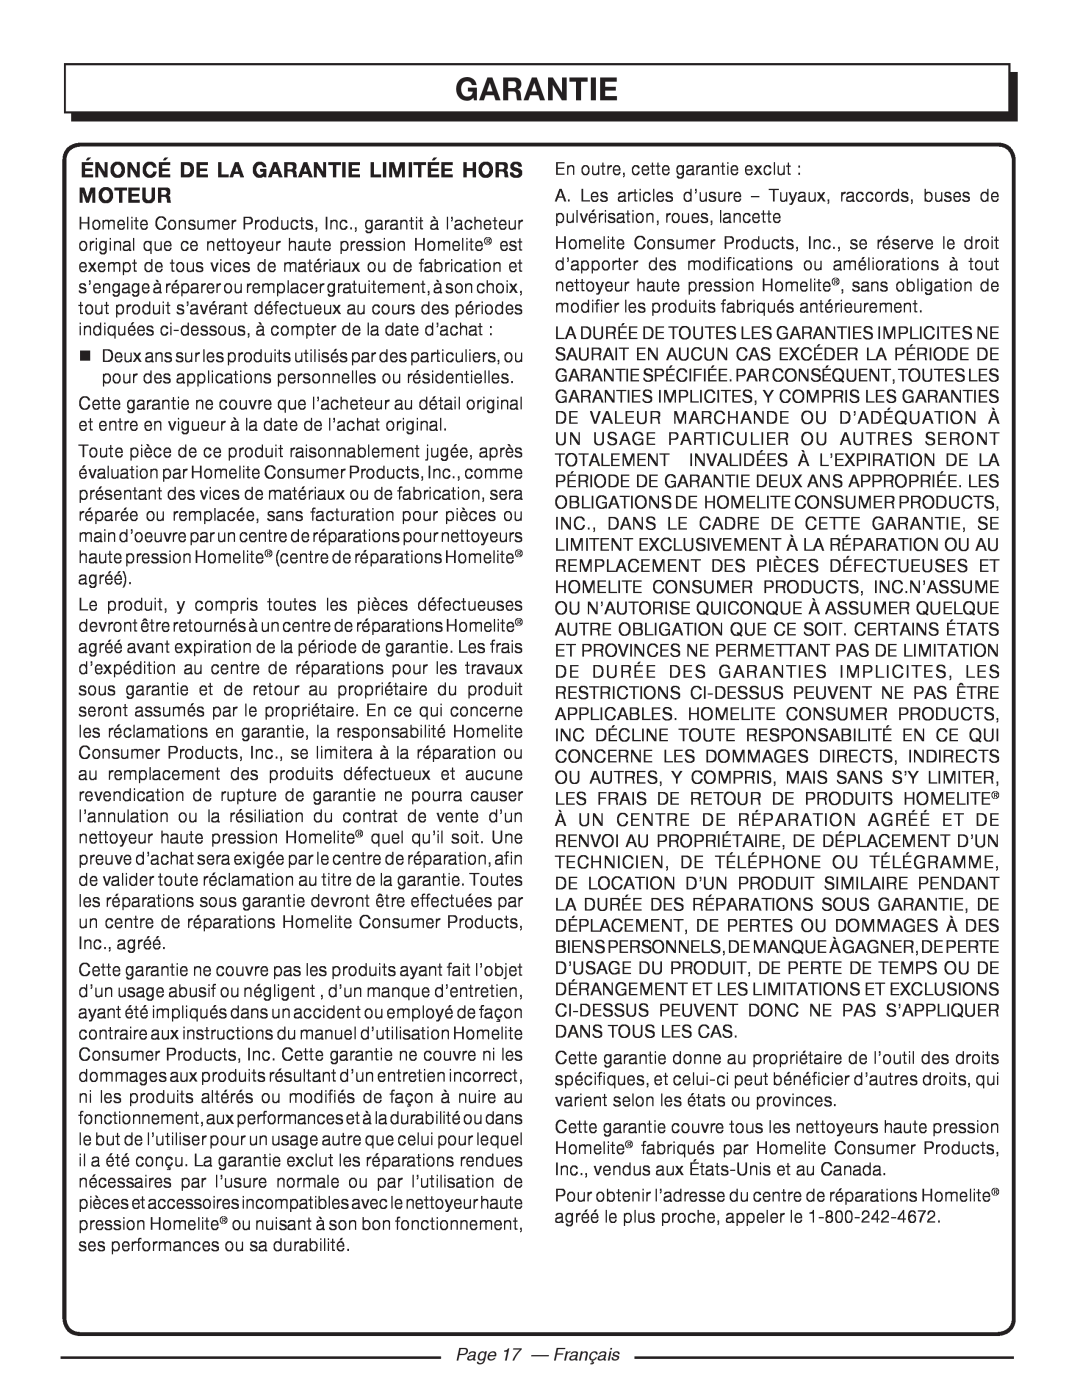 Homelite UT80720 manuel dutilisation Énoncé De La Garantie Limitée Hors Moteur, Page 17 - Français 